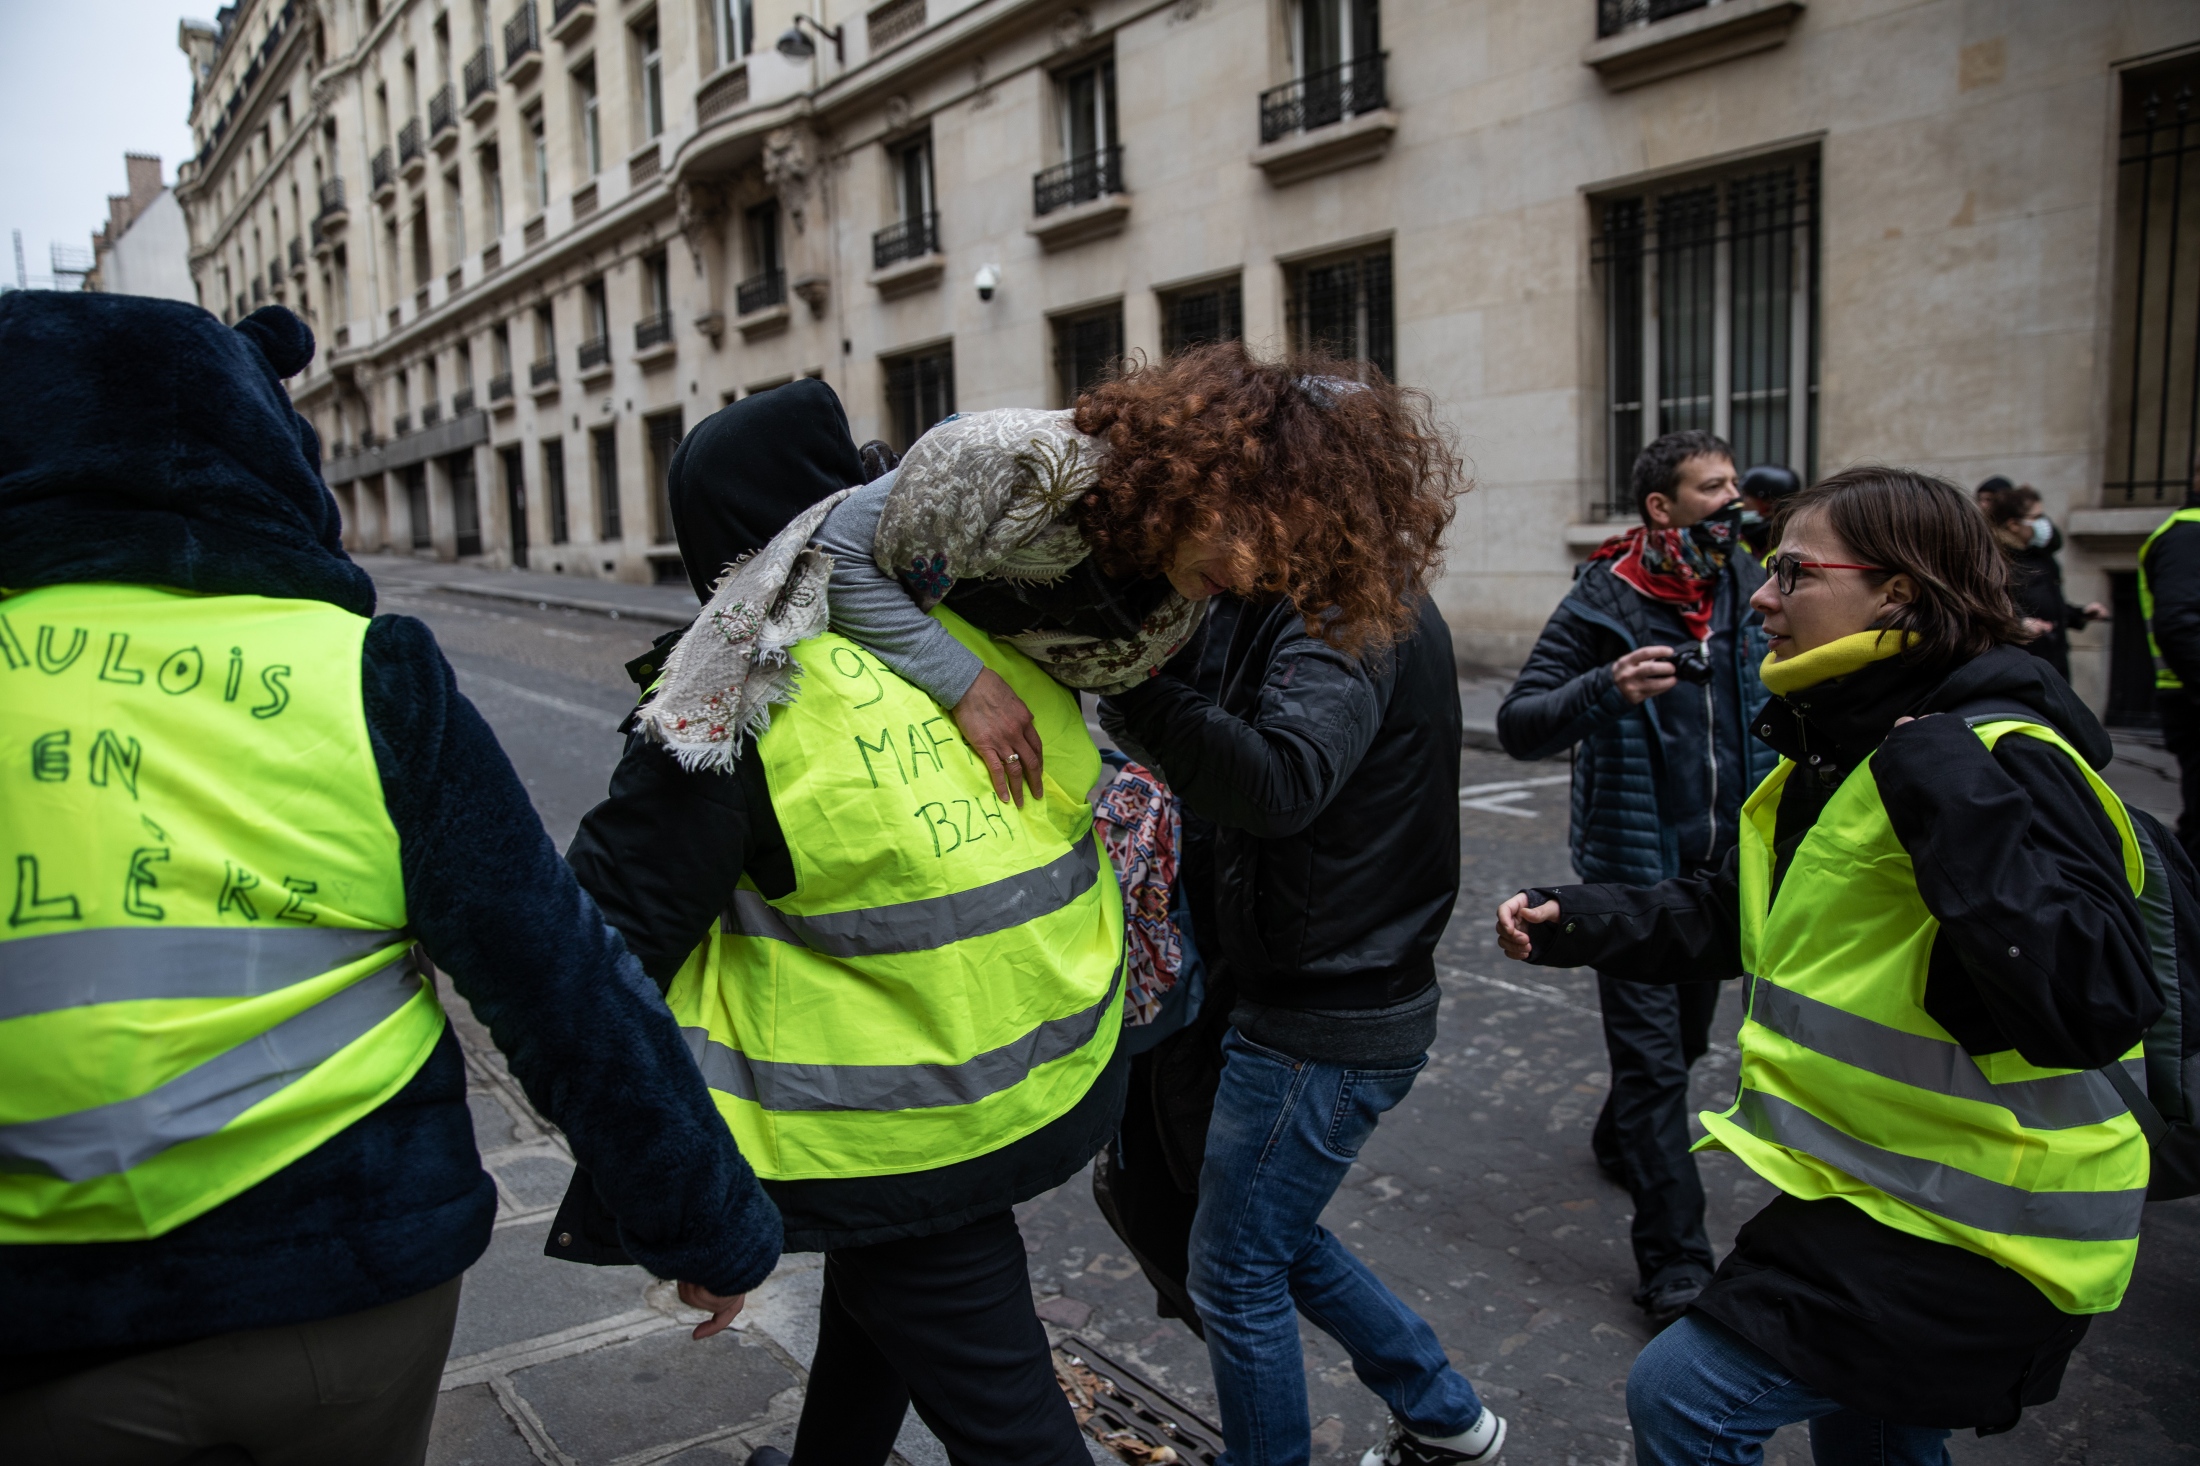 Yellow vests (Le Monde)